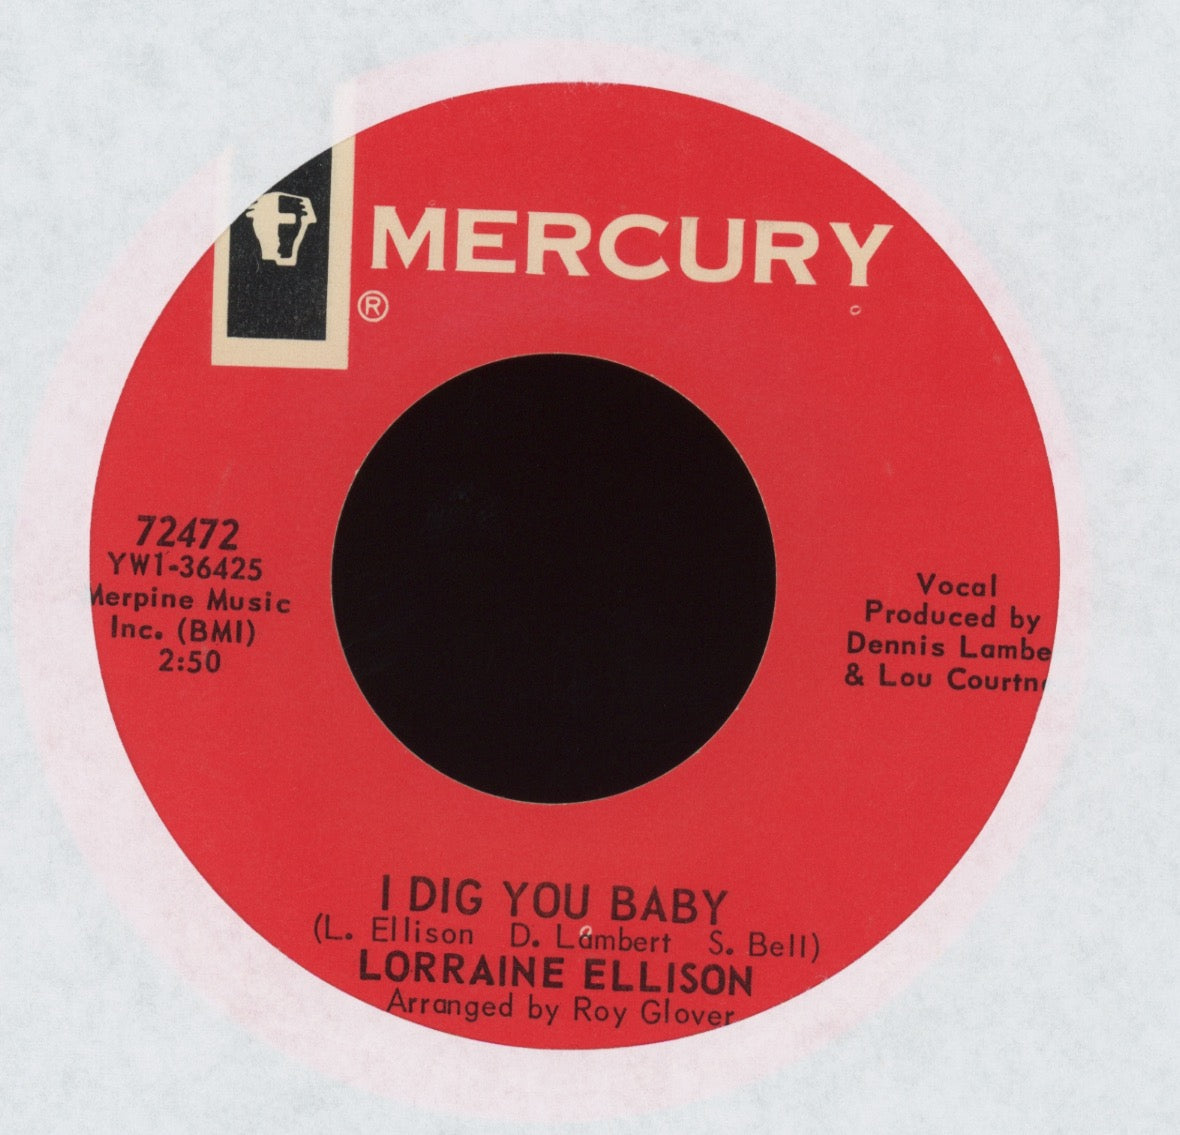 Lorraine Ellison - I Dig You Baby on Mercury